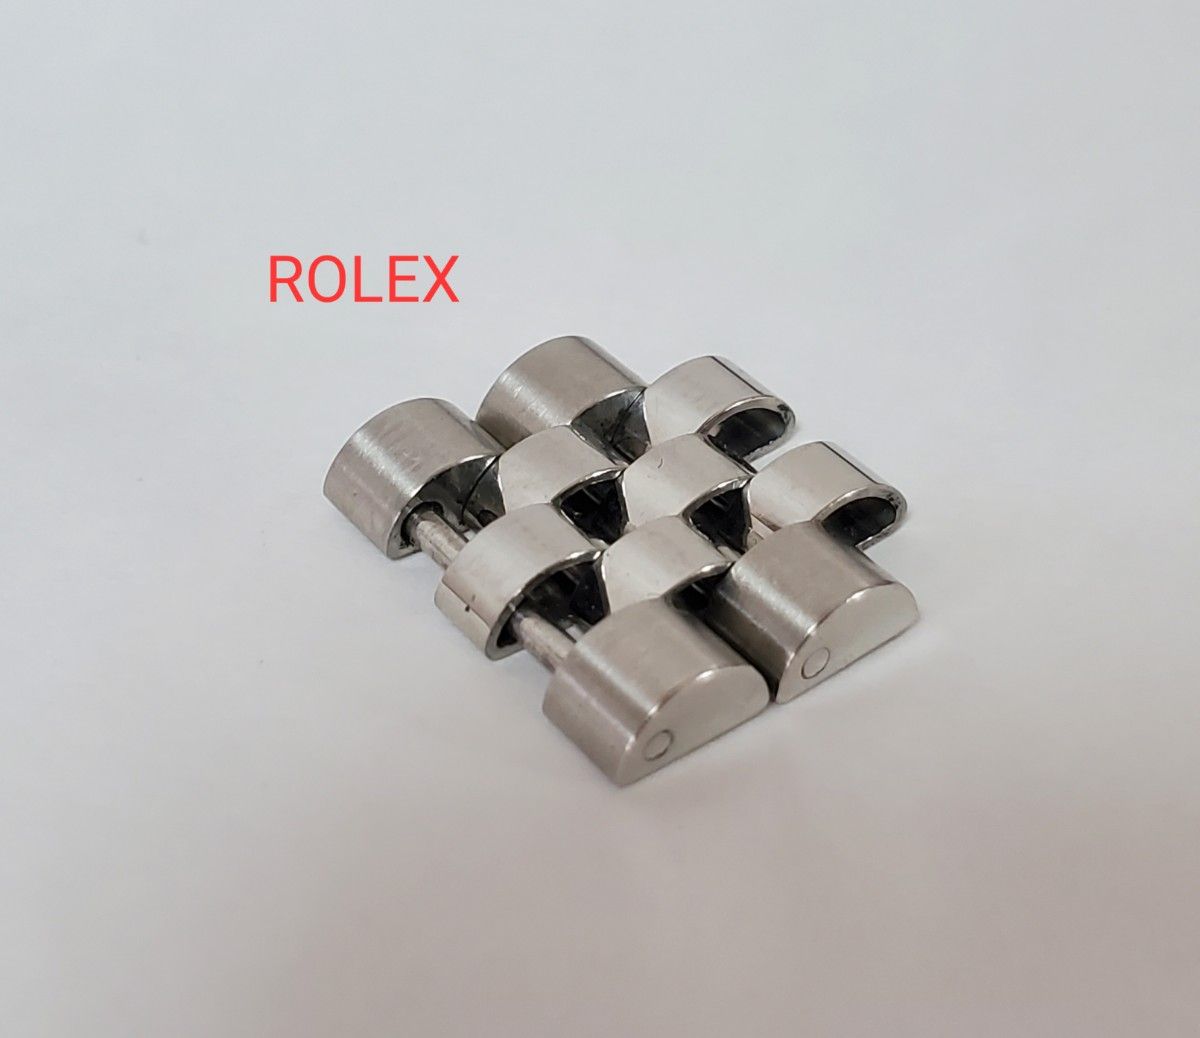 ロレックス コマ 駒 デイトジャスト メンズ ROLEX シルバーカラー 正規品 ジュビリーブレス パーペチュアル 腕時計